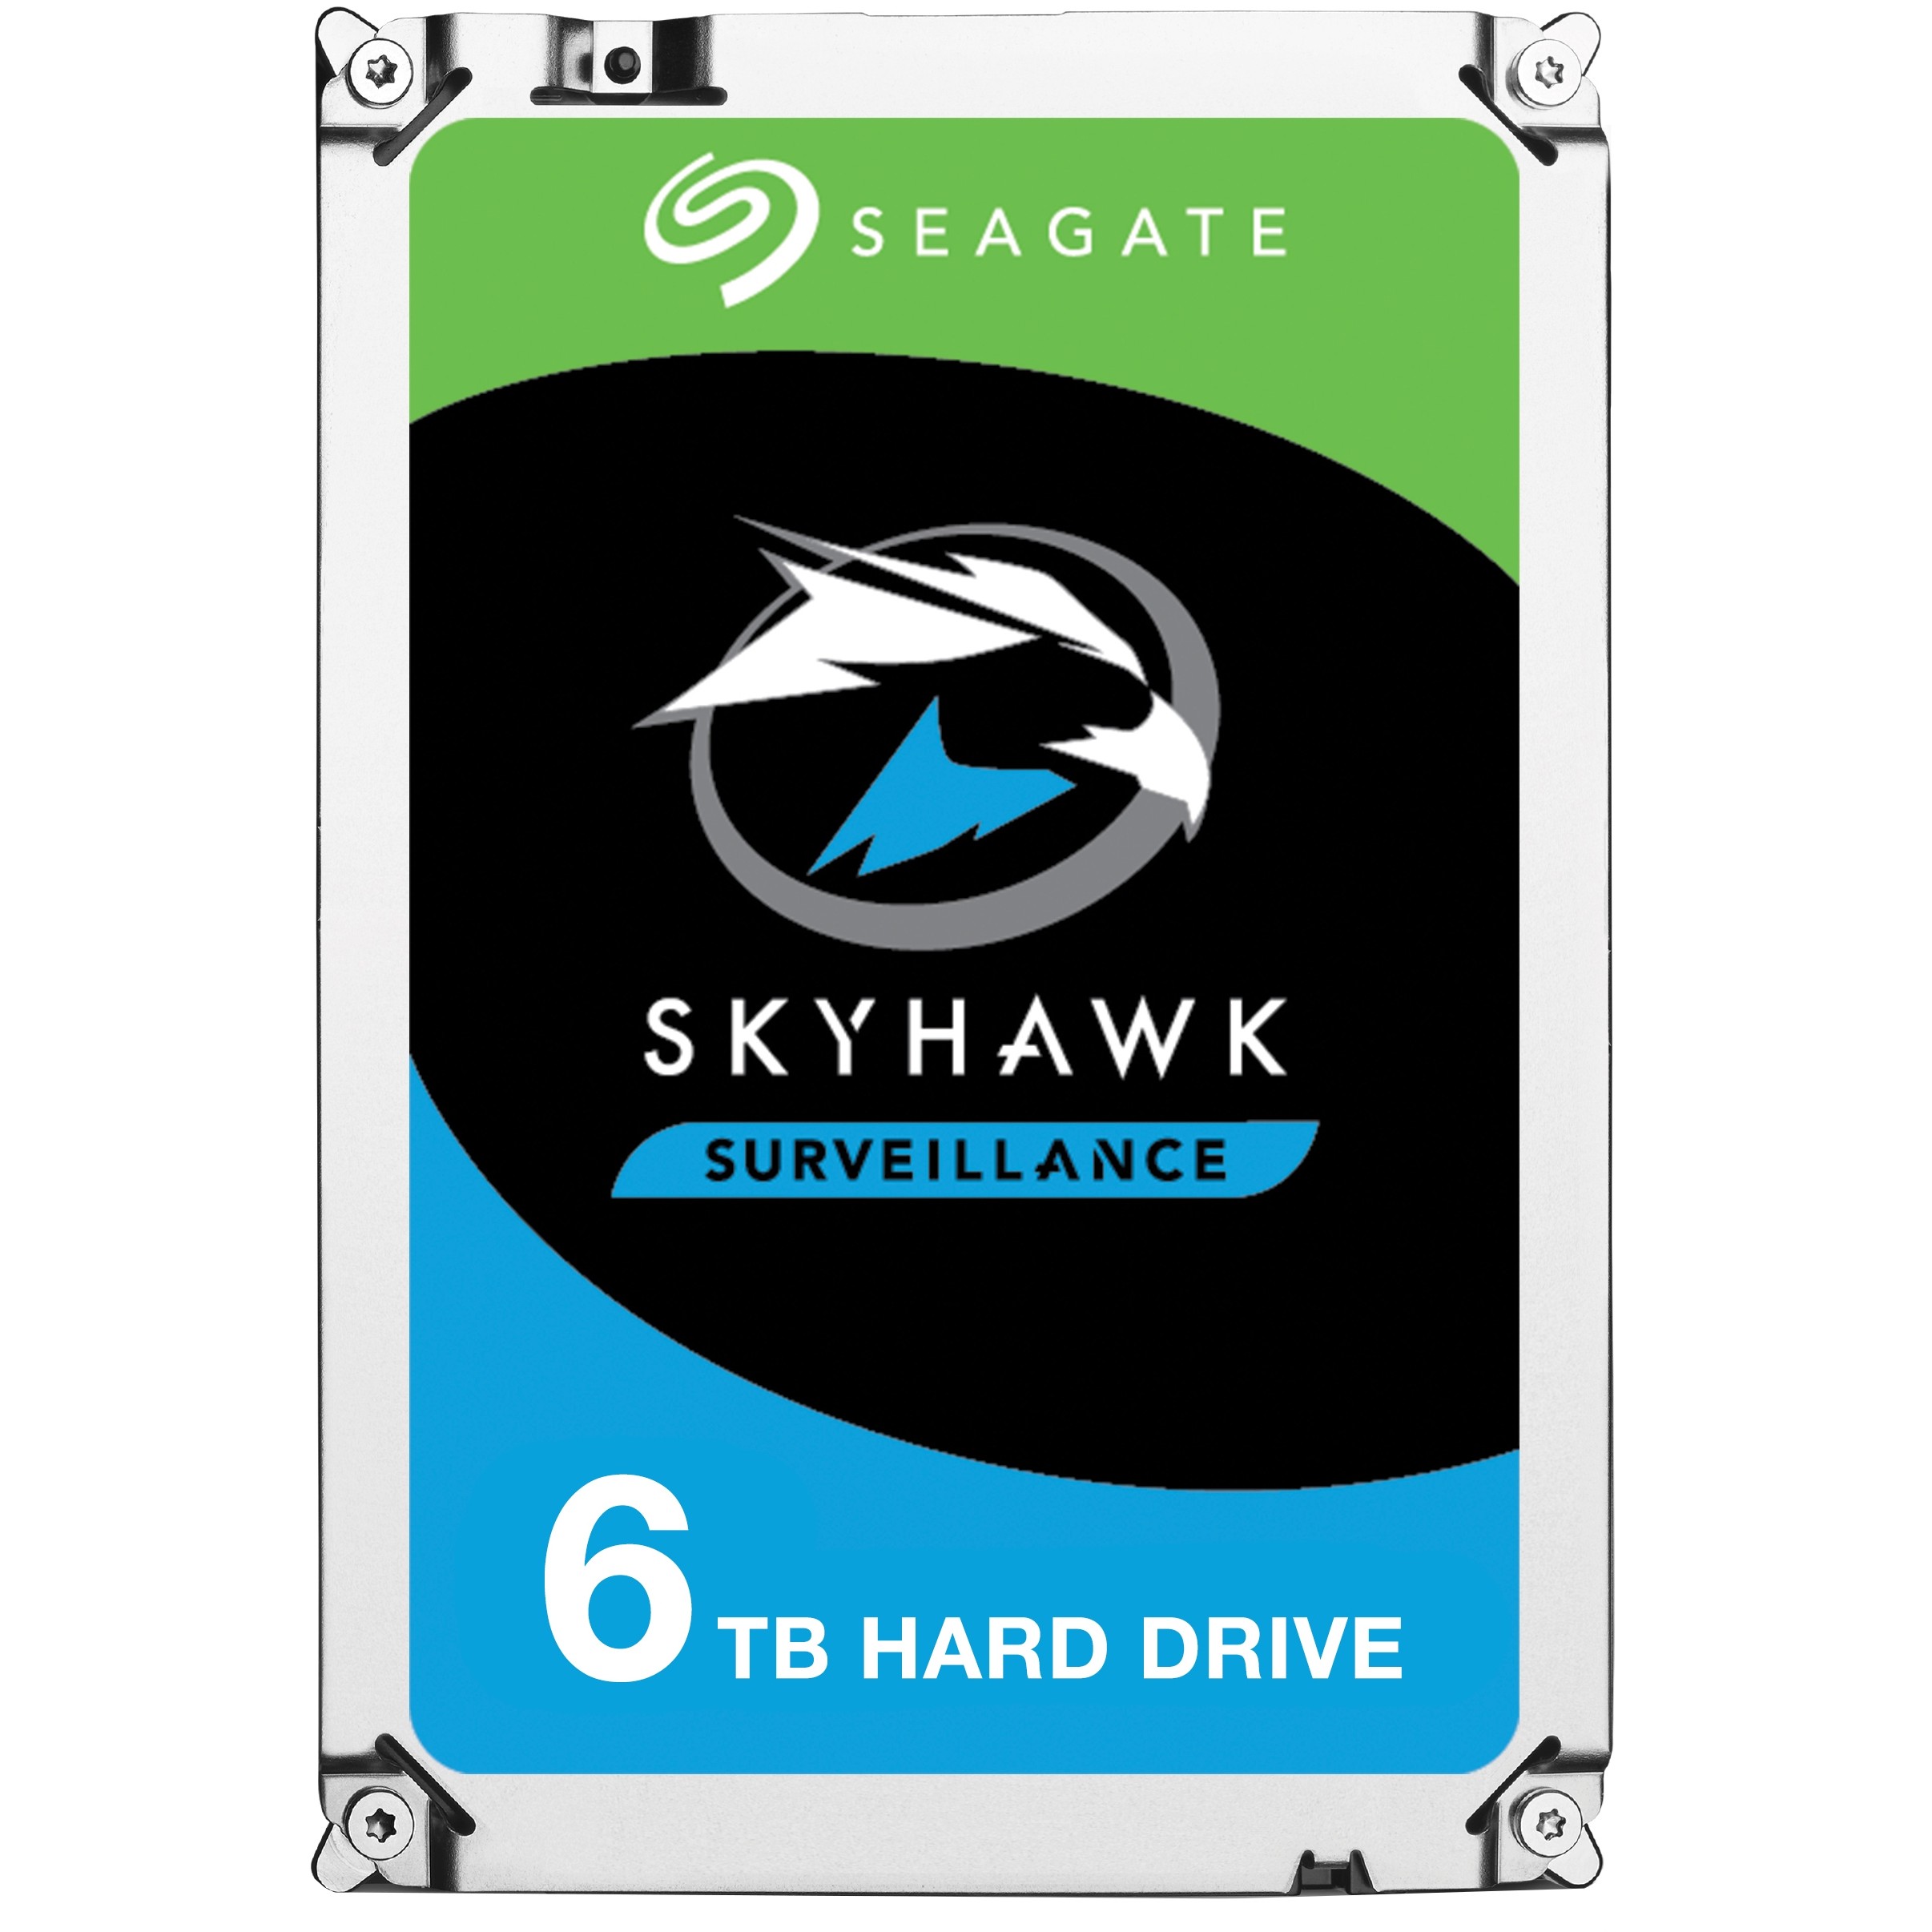 Seagate SkyHawk ST6000VX001 internal hard drive - ST6000VX001